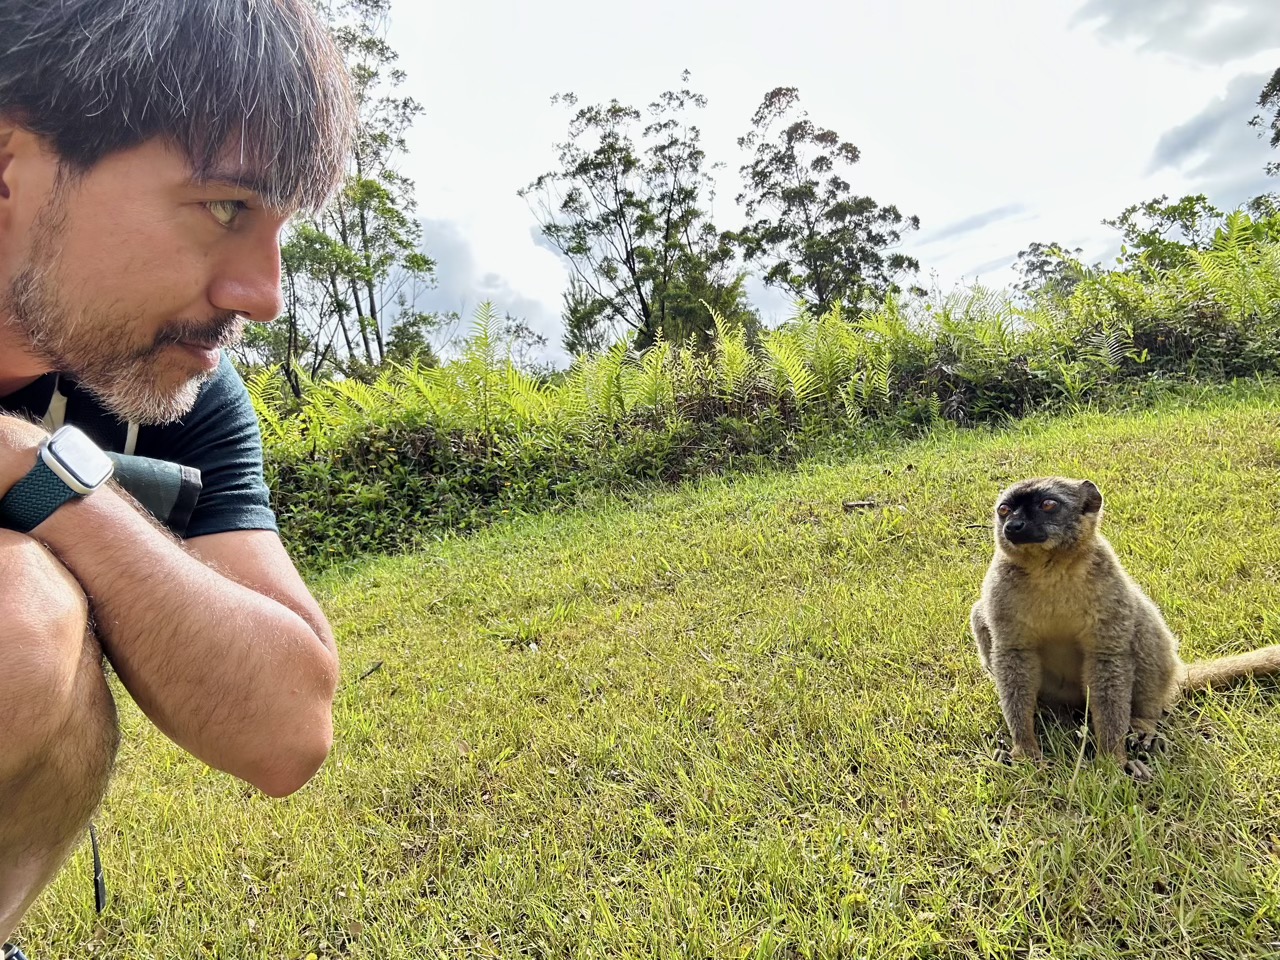 Selfie with a lemur, part ii